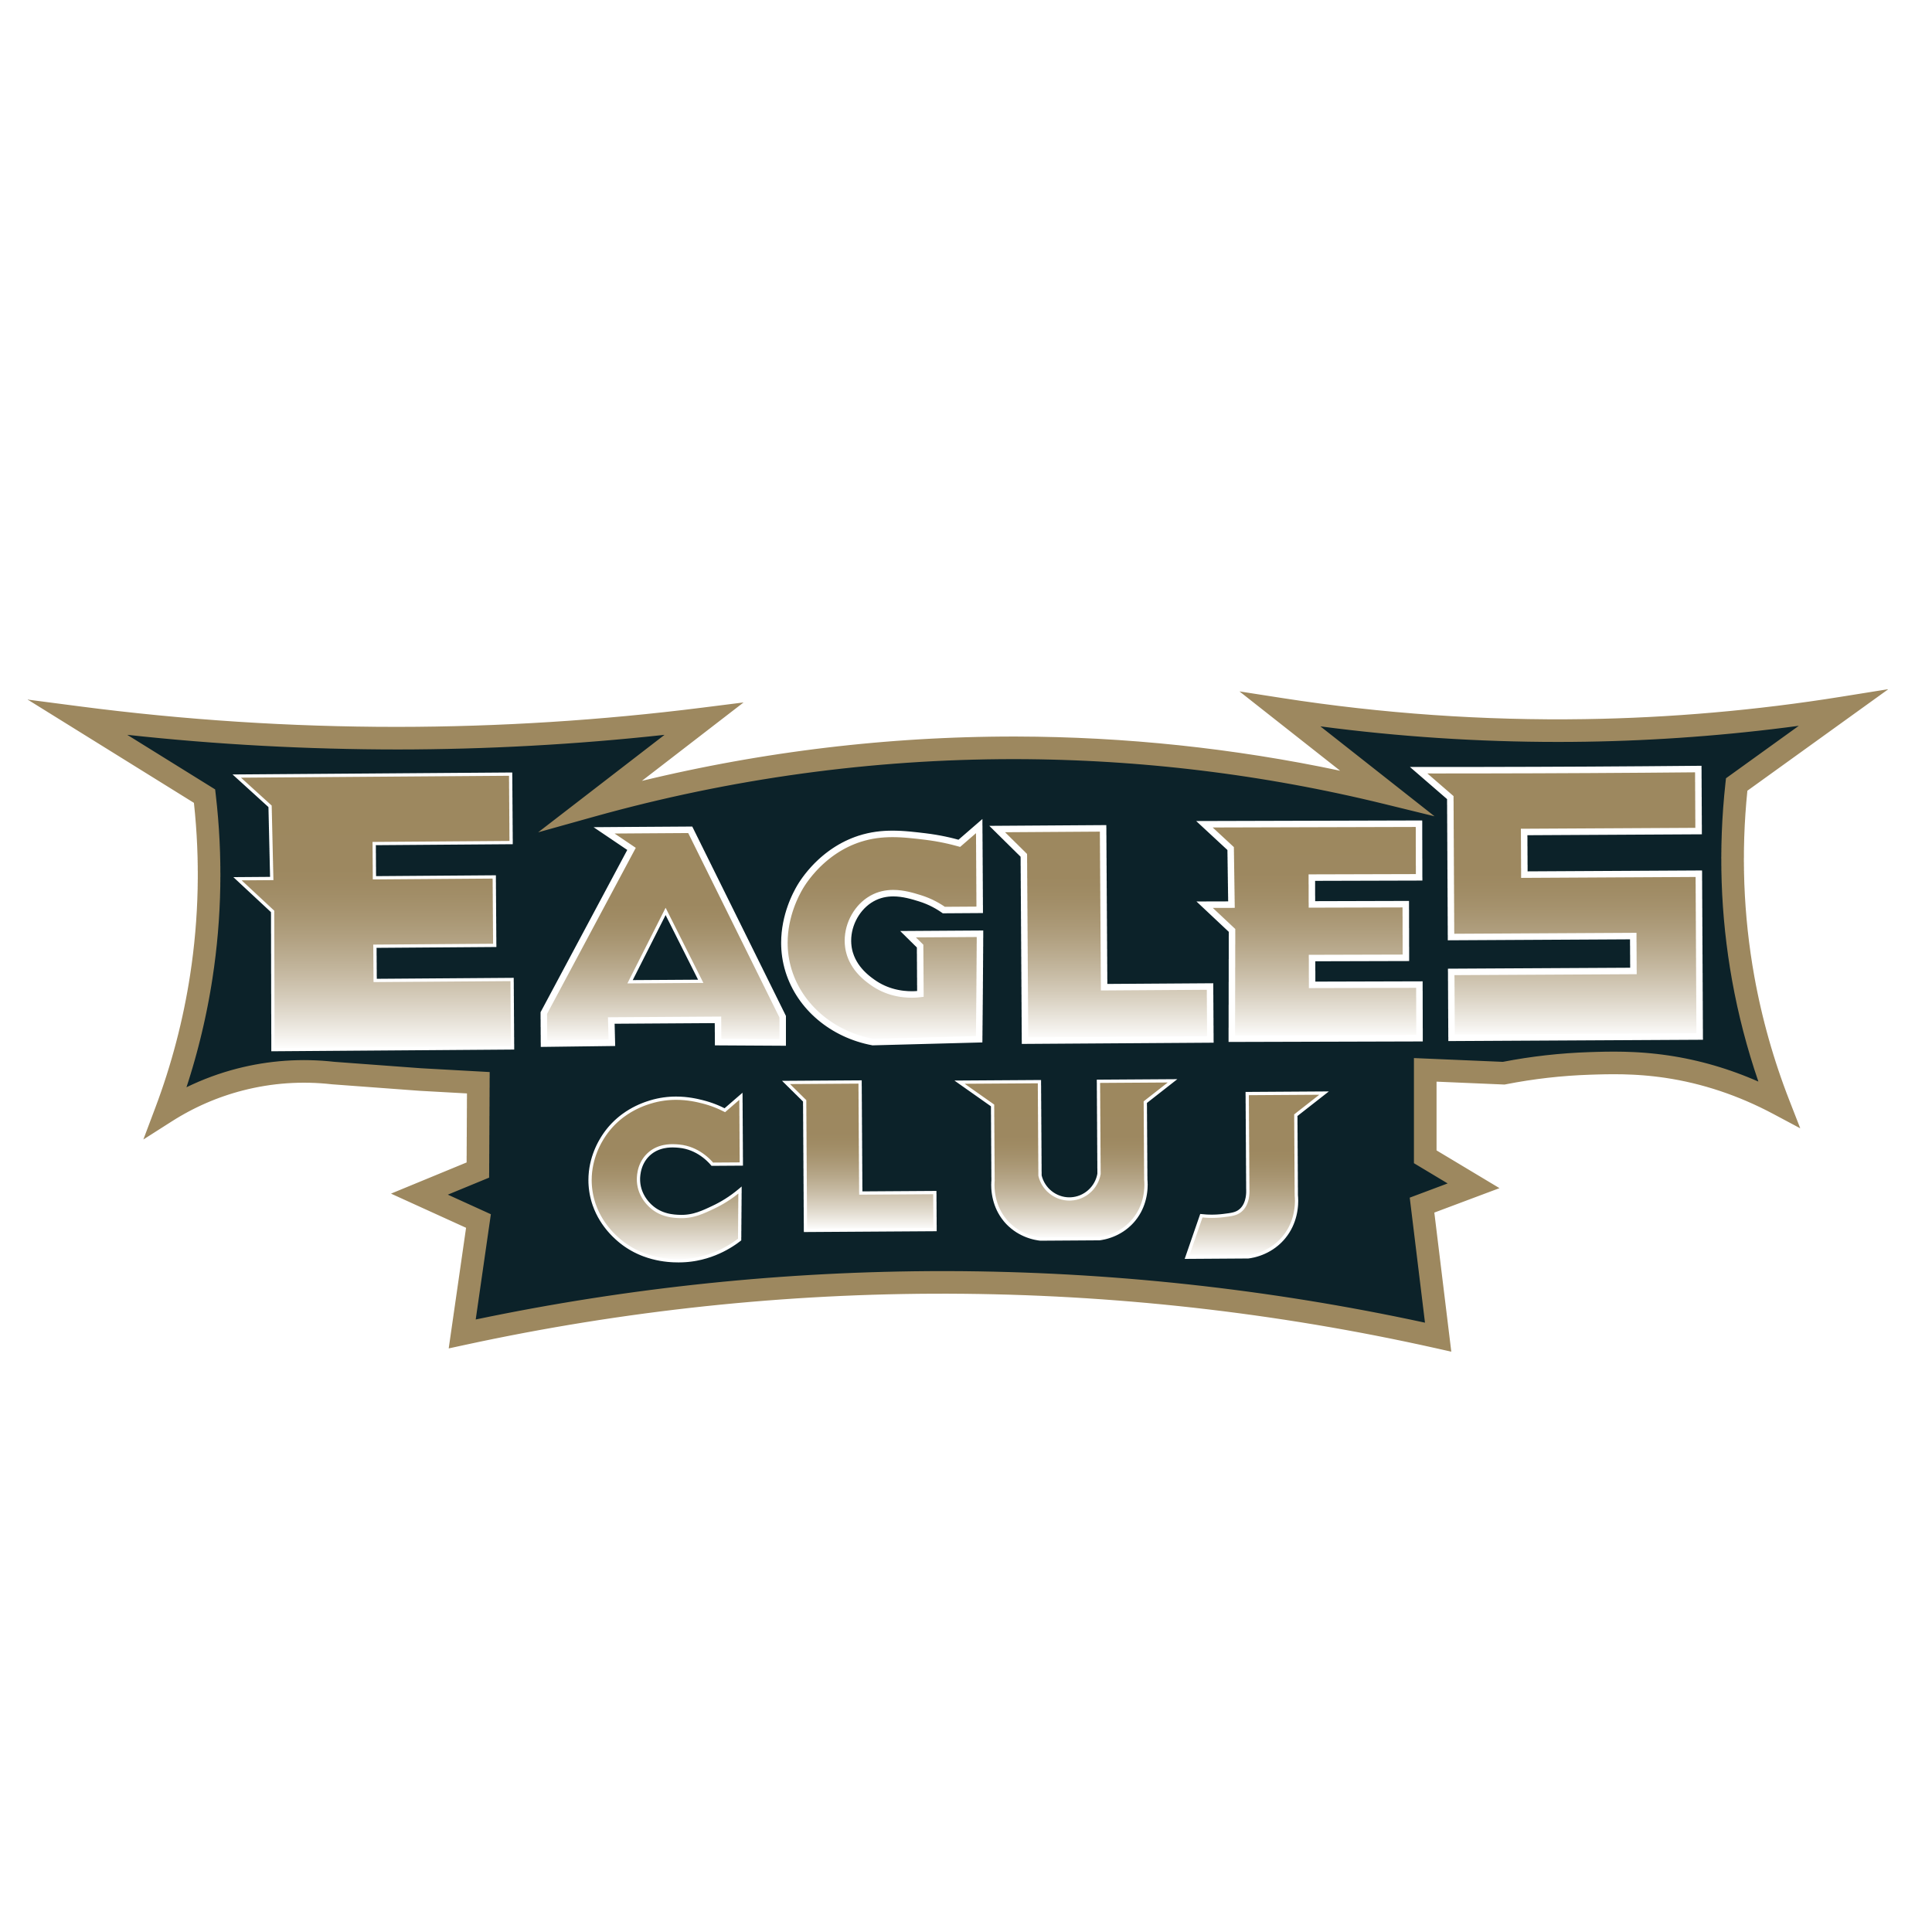 Eagles Cluj